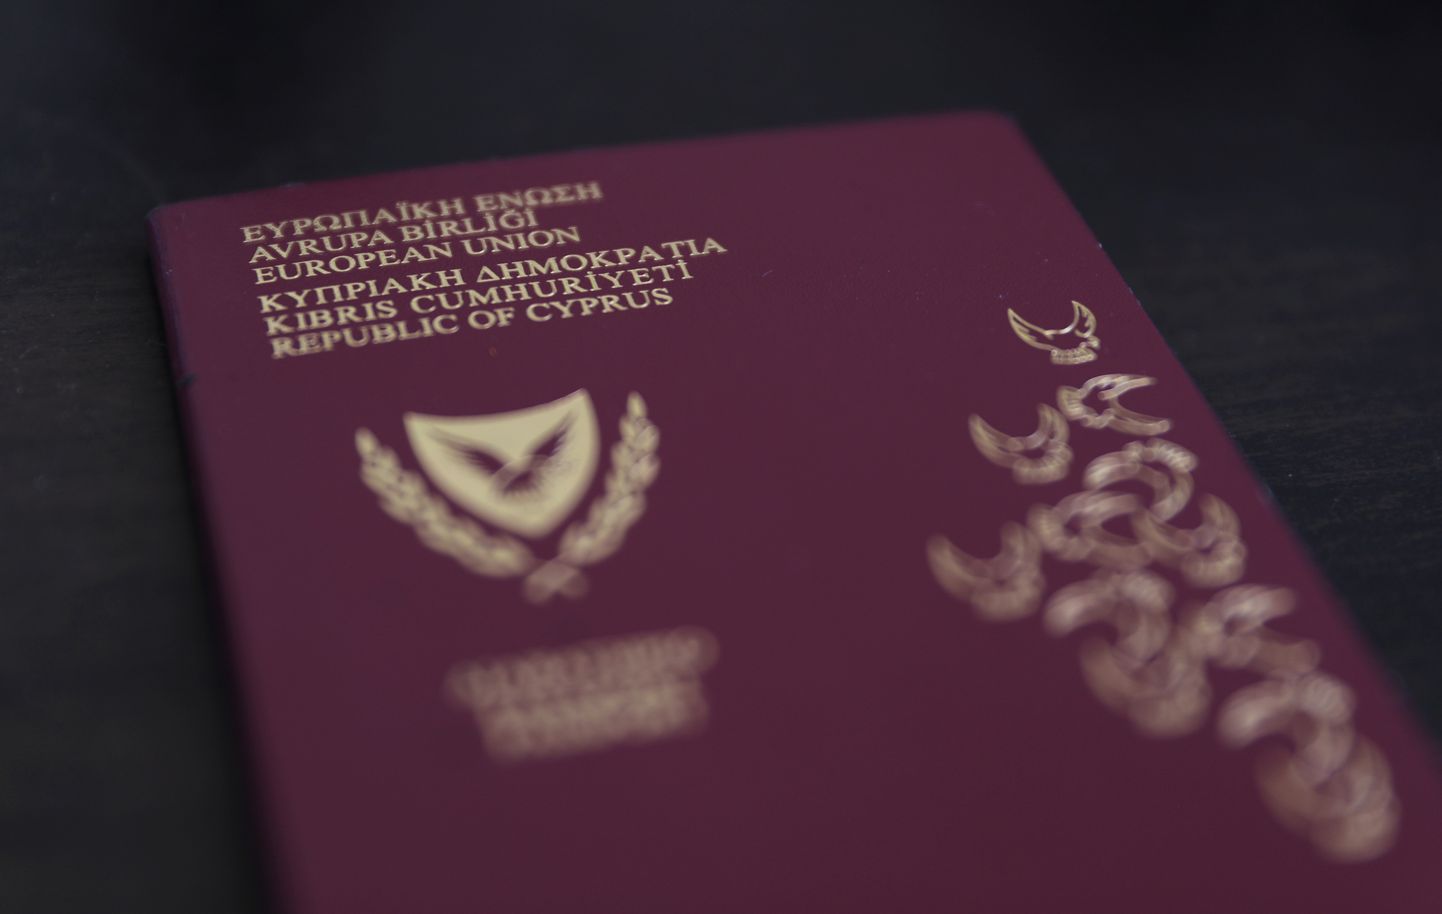 Küprose pass